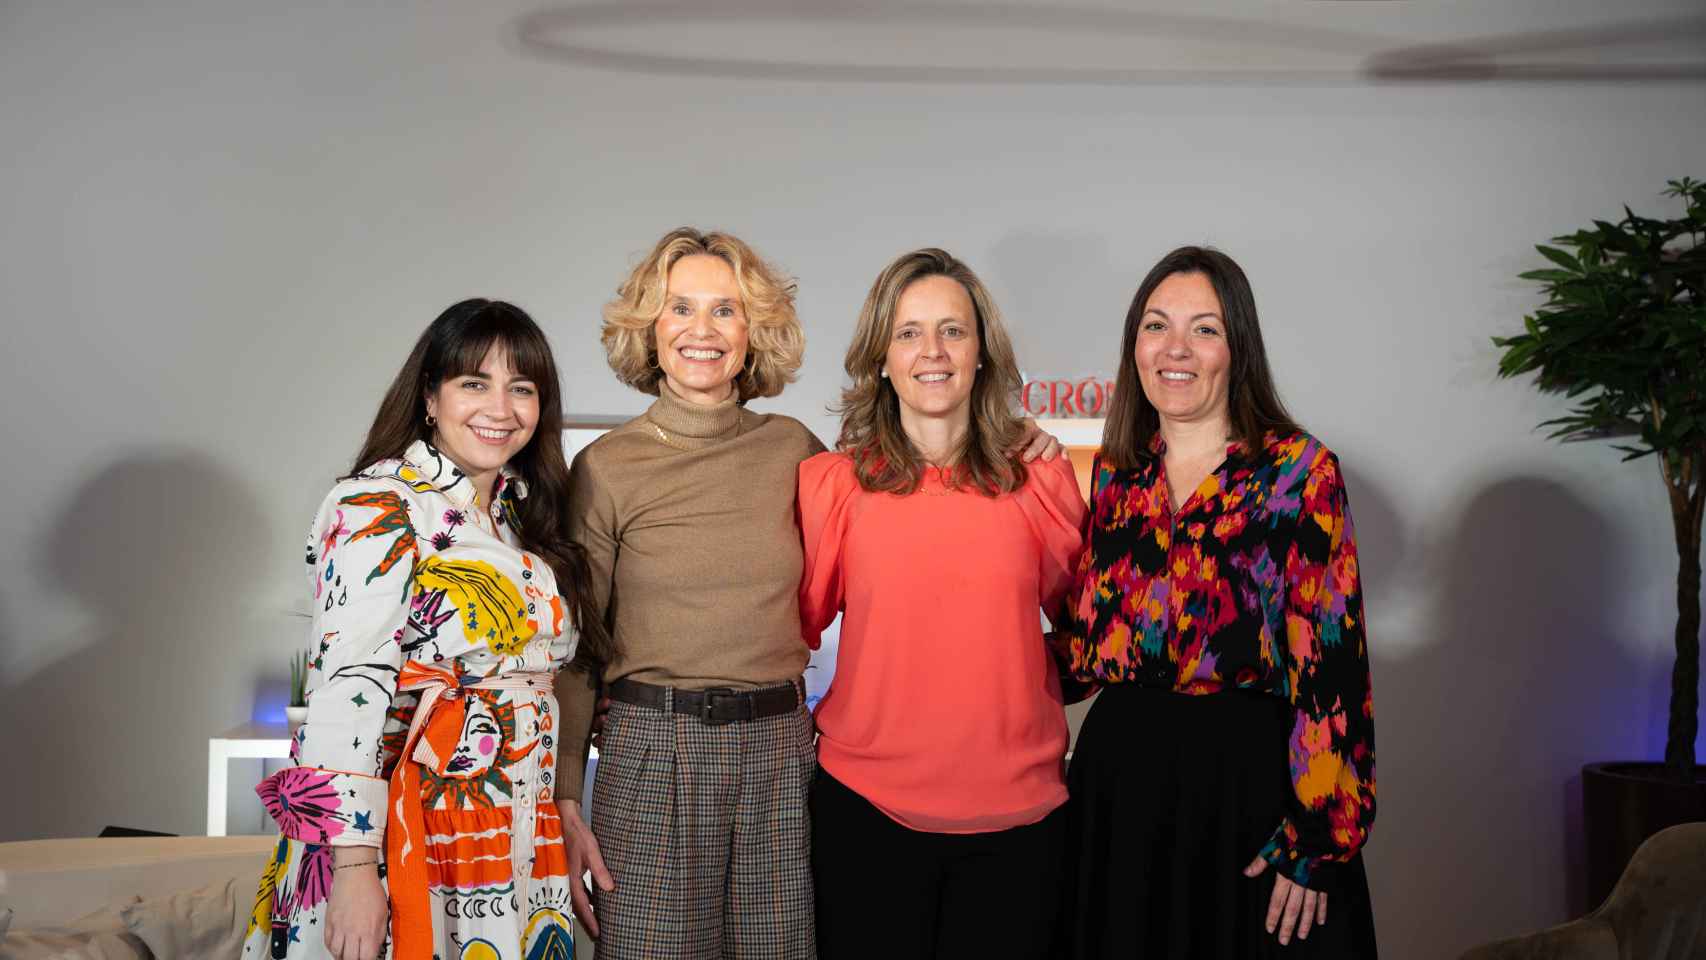 De izquierda a derecha: Anaísa López, creadora digital; Marimer Pérez, líder de WoMer; Cristina Guix, ginecóloga de Barcelona IVF, y Helena Fernández, presidenta de la Asociación Red Nacional de Infértiles